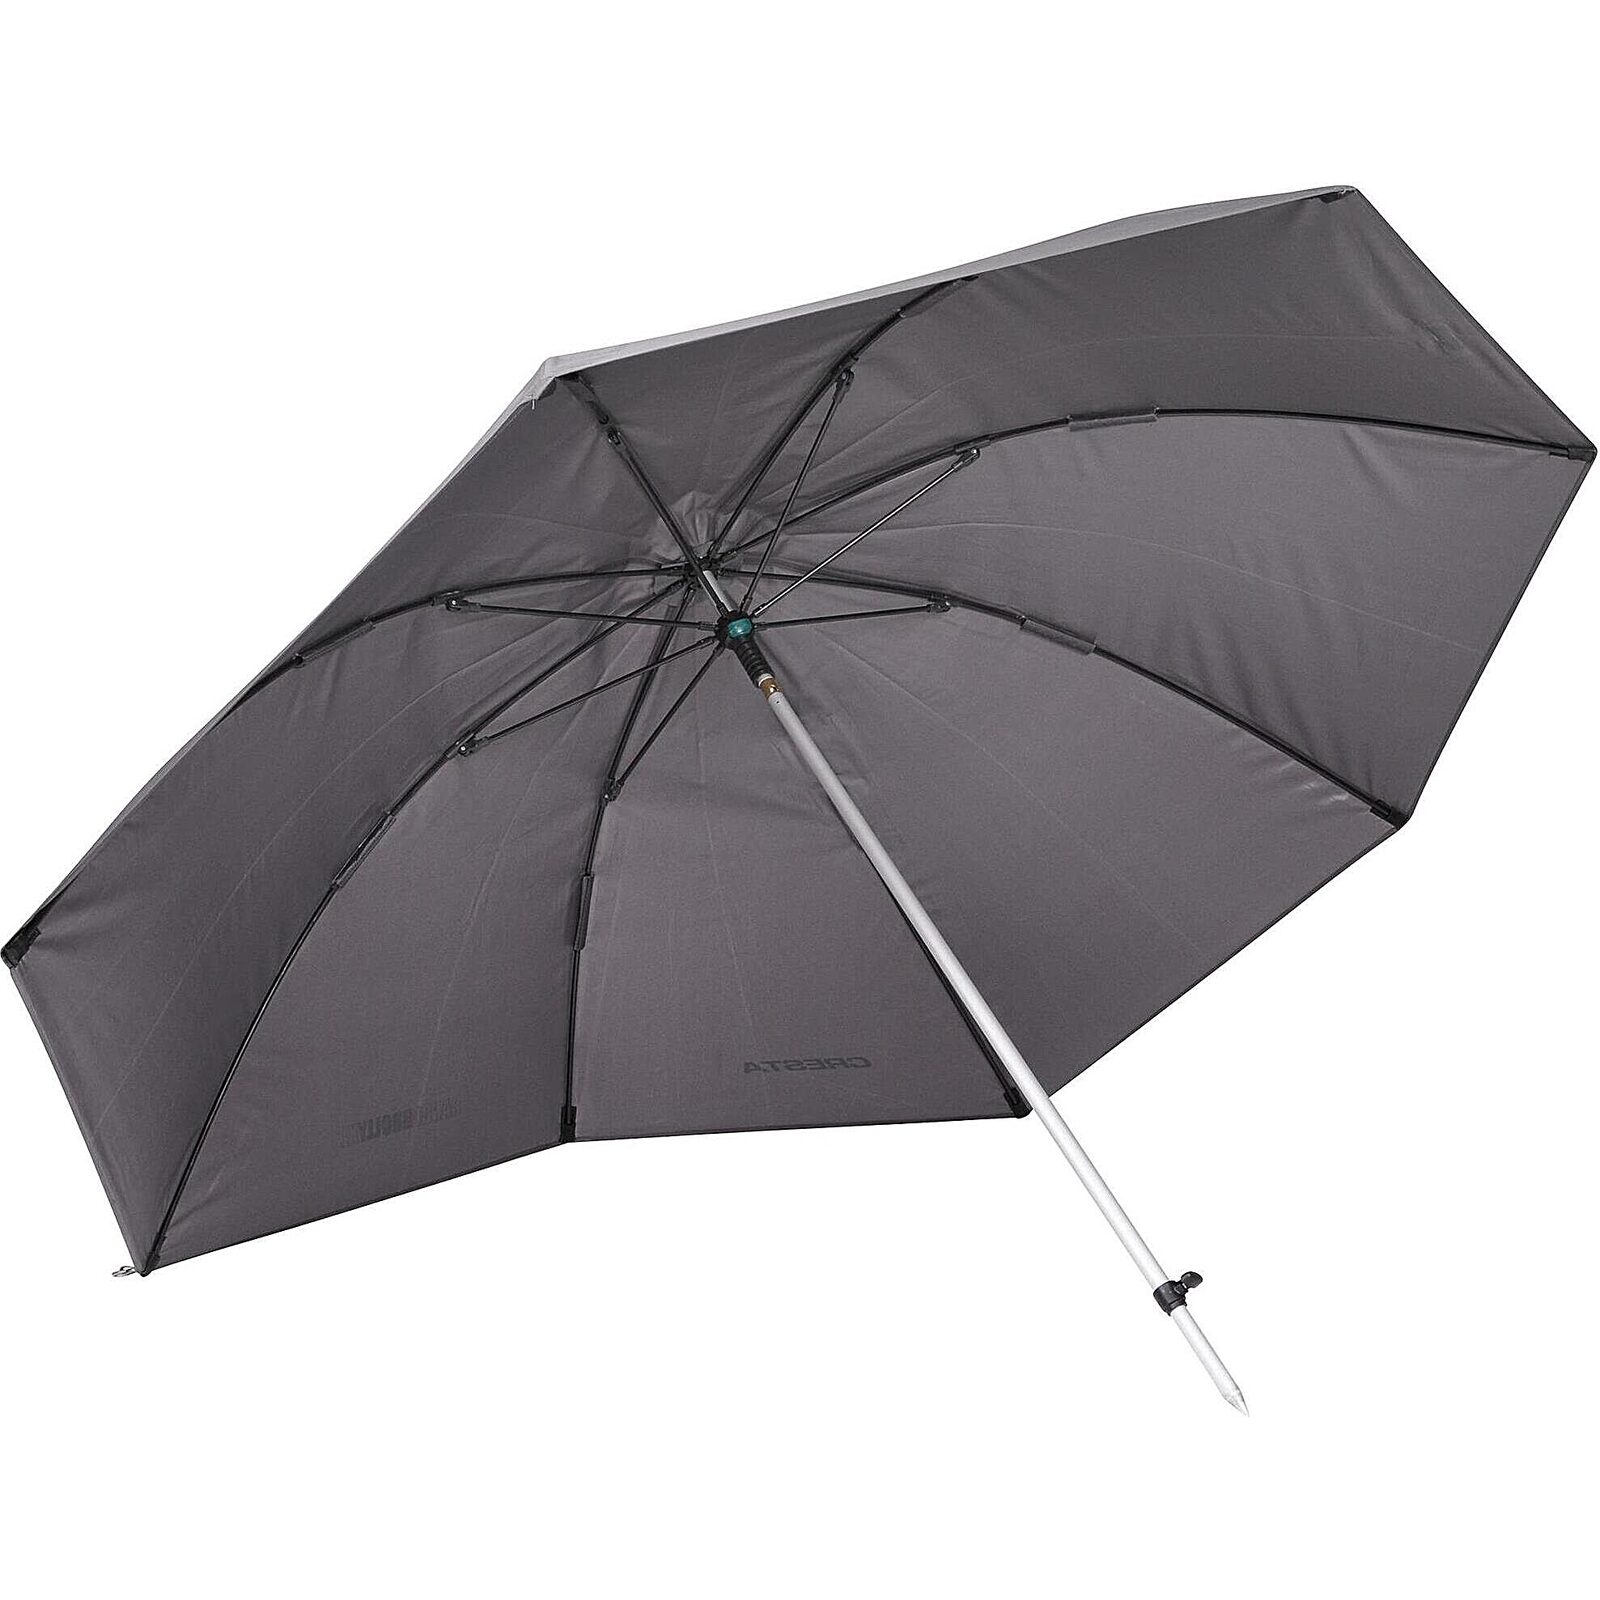 Necklet Gezamenlijke selectie Negende Cresta Feeder Umbrella kopen? Hengelsport Webshop